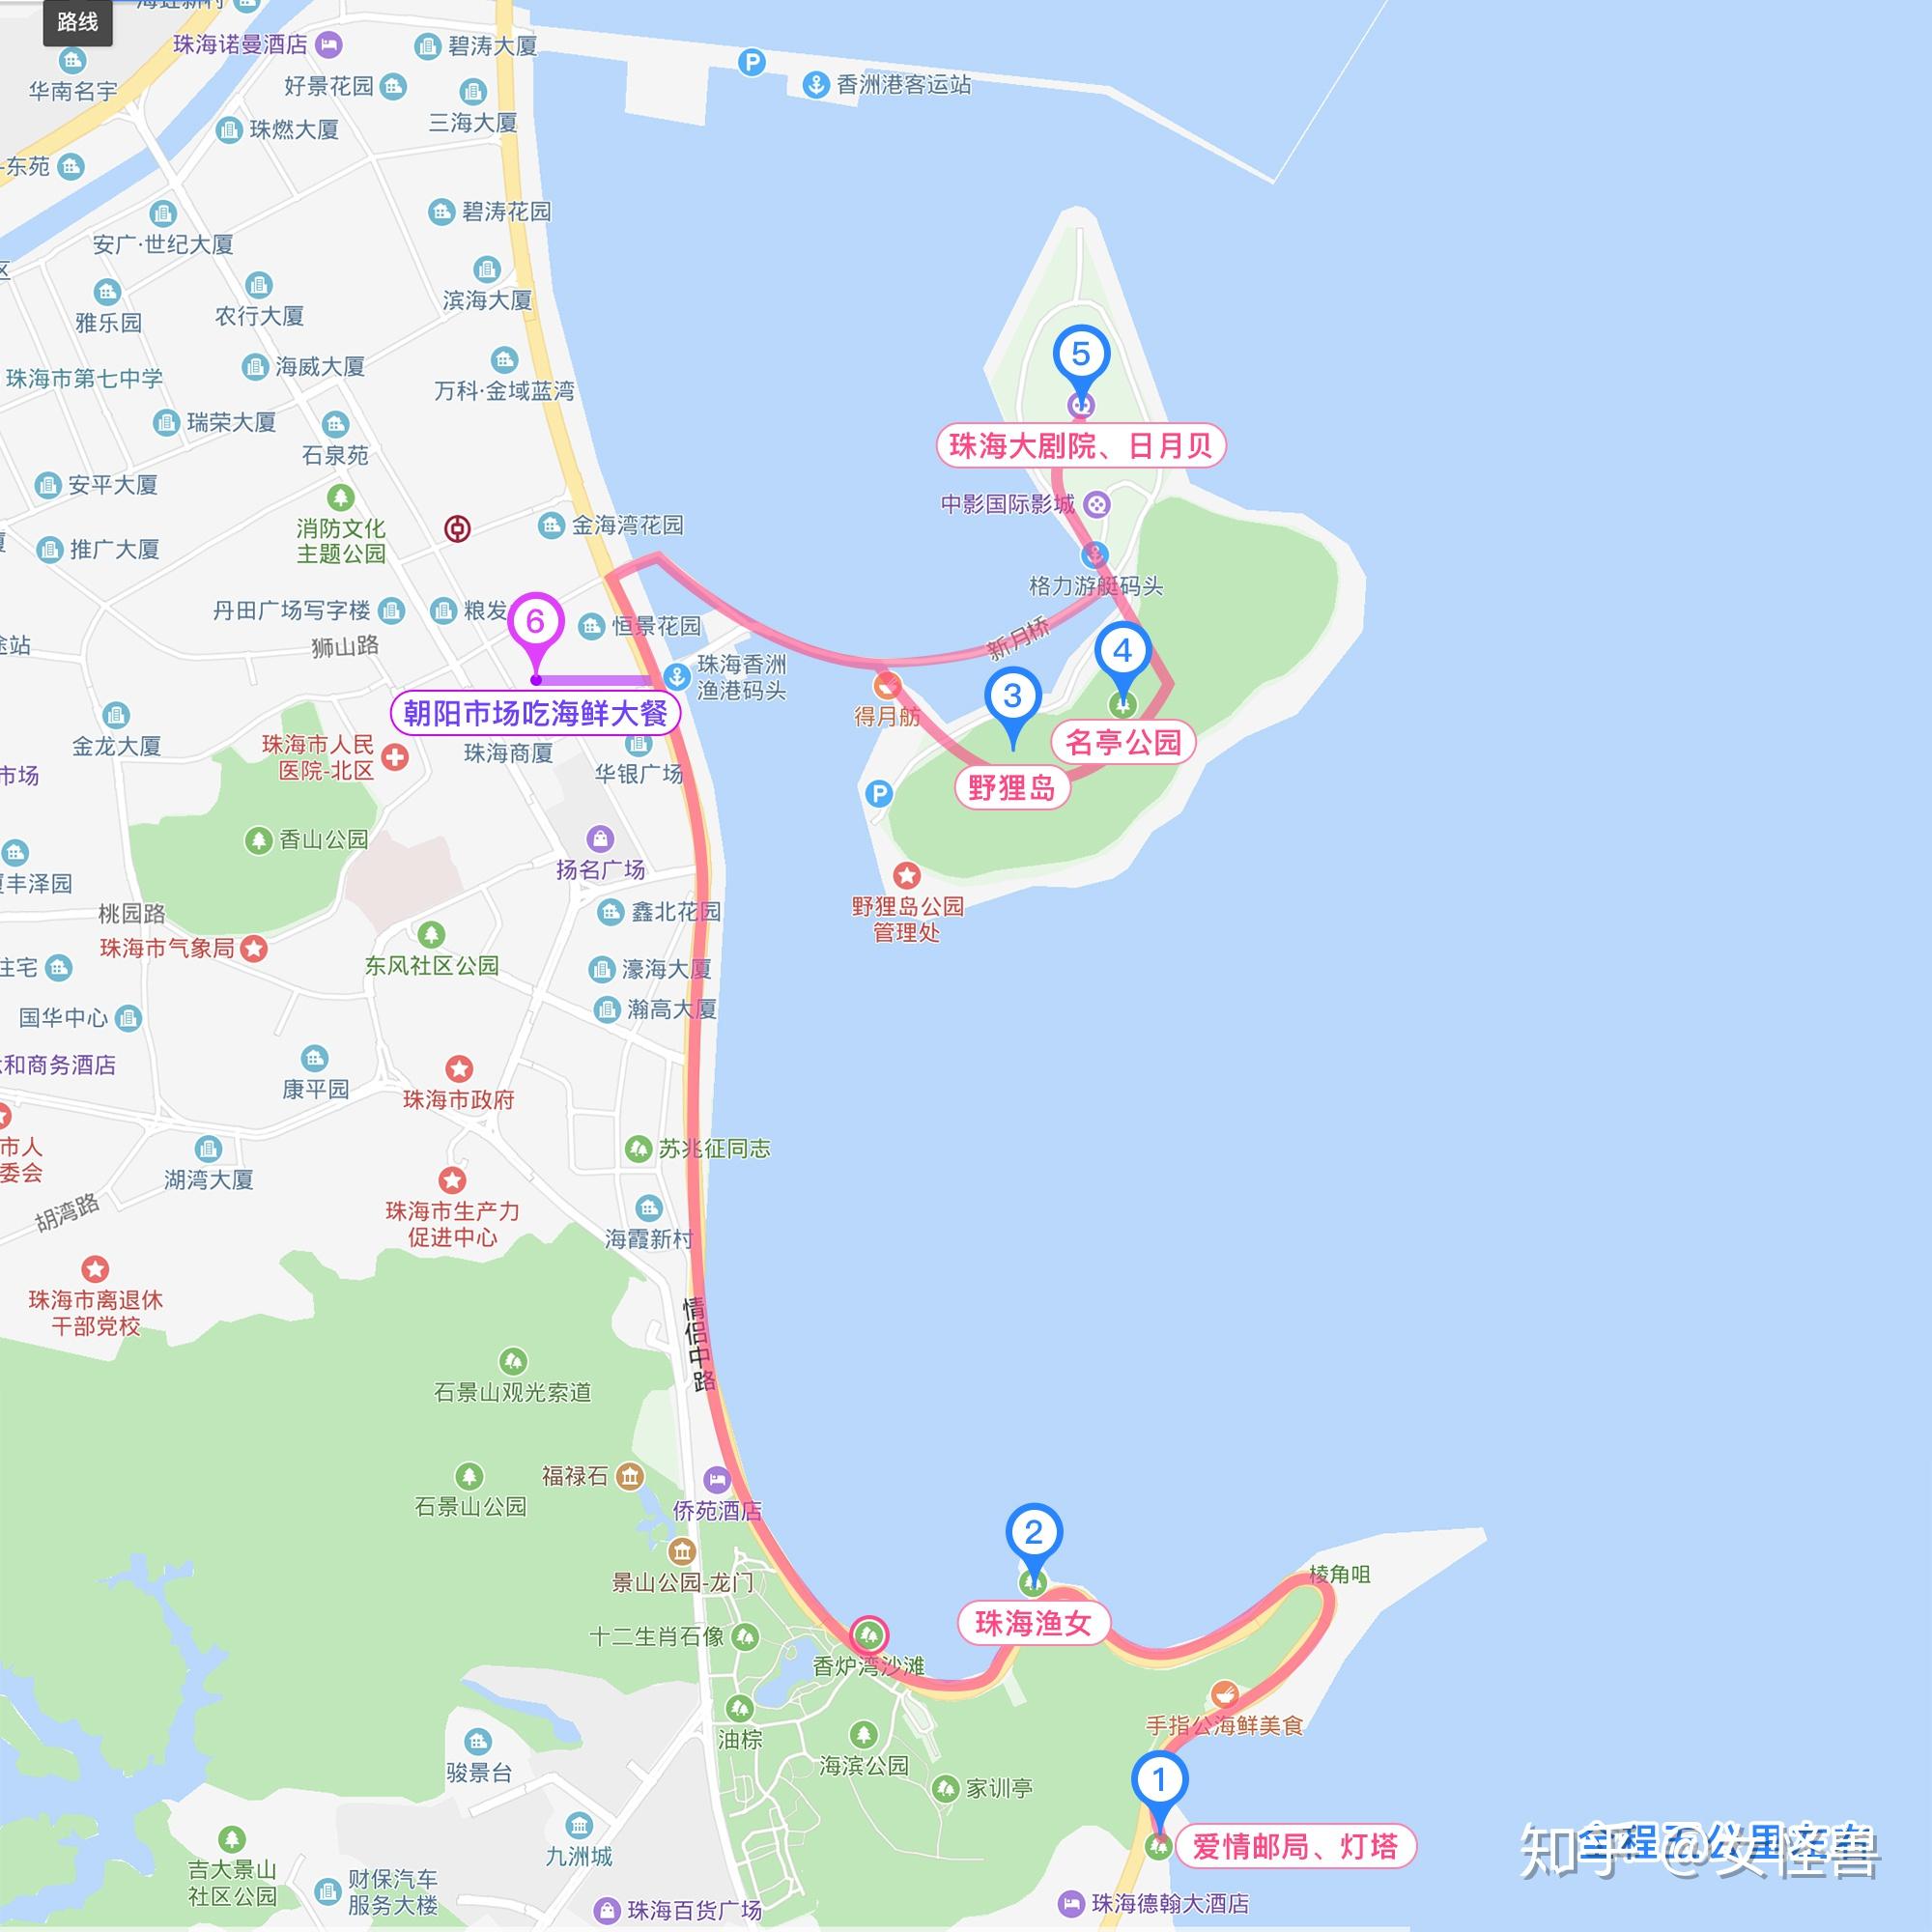 永康市交通运输局关于《义龙庆高速公路永康联络线社会风险评估公众意见收集公告》